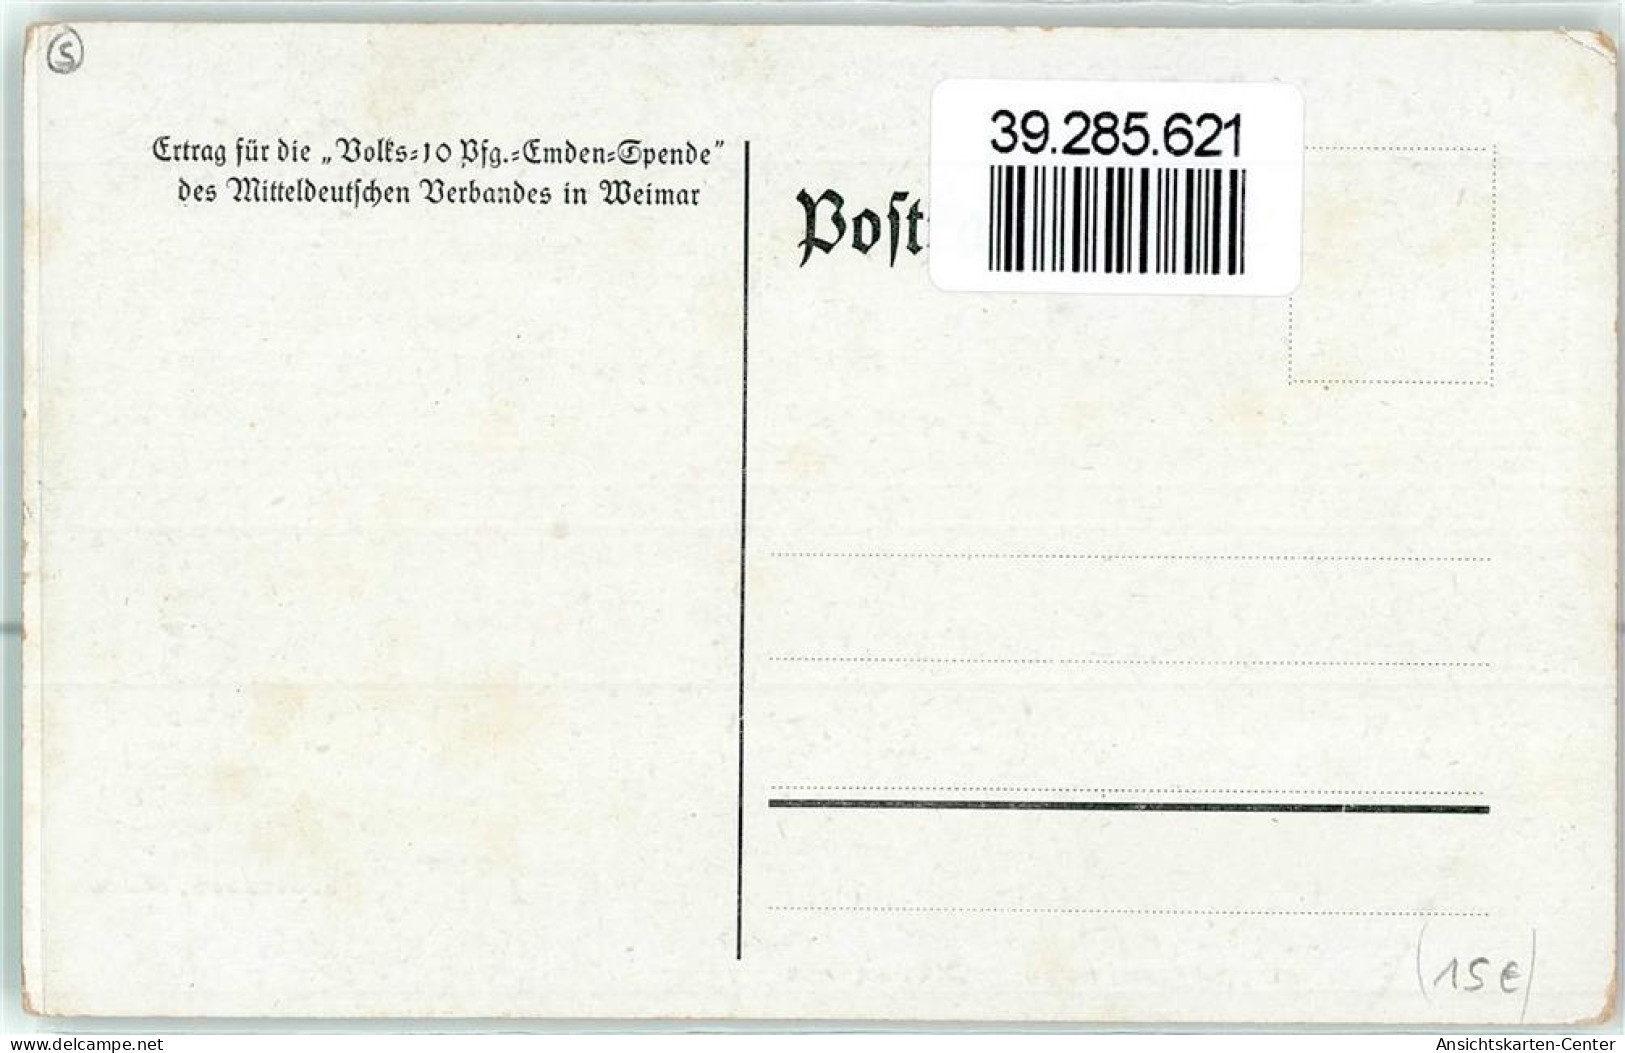 39285621 - Kreuzer Emden Vernichtet Englischen Handelsdampfer Gedicht Bermbach Mitteldeutscher Verband Weimar - Stoewer, Willy